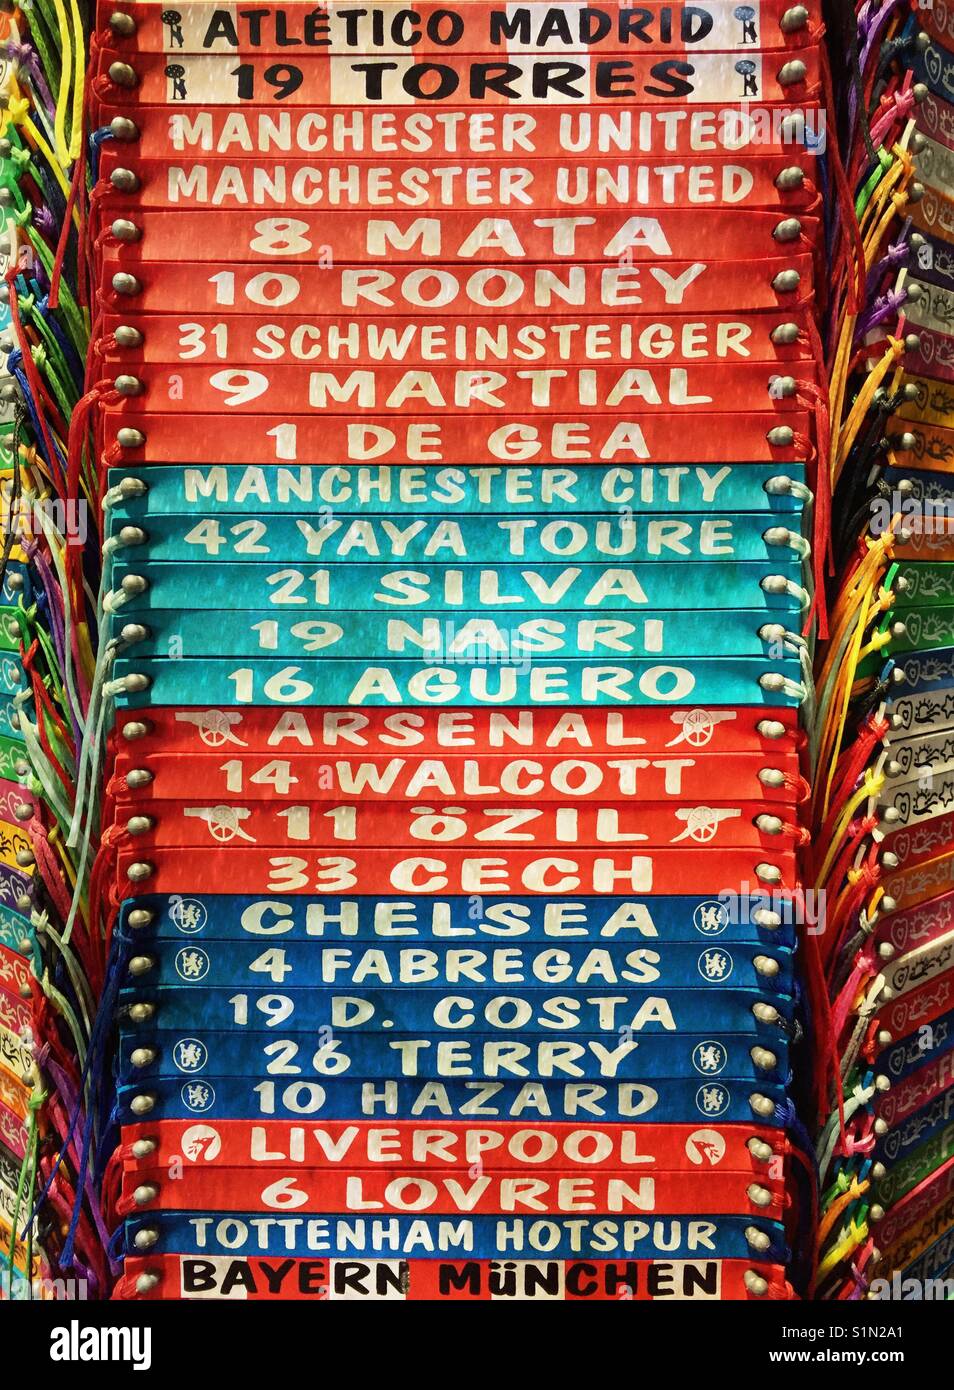 Las pulseras de fútbol con los nombres de los equipos de fútbol y jugadores  de fútbol Fotografía de stock - Alamy